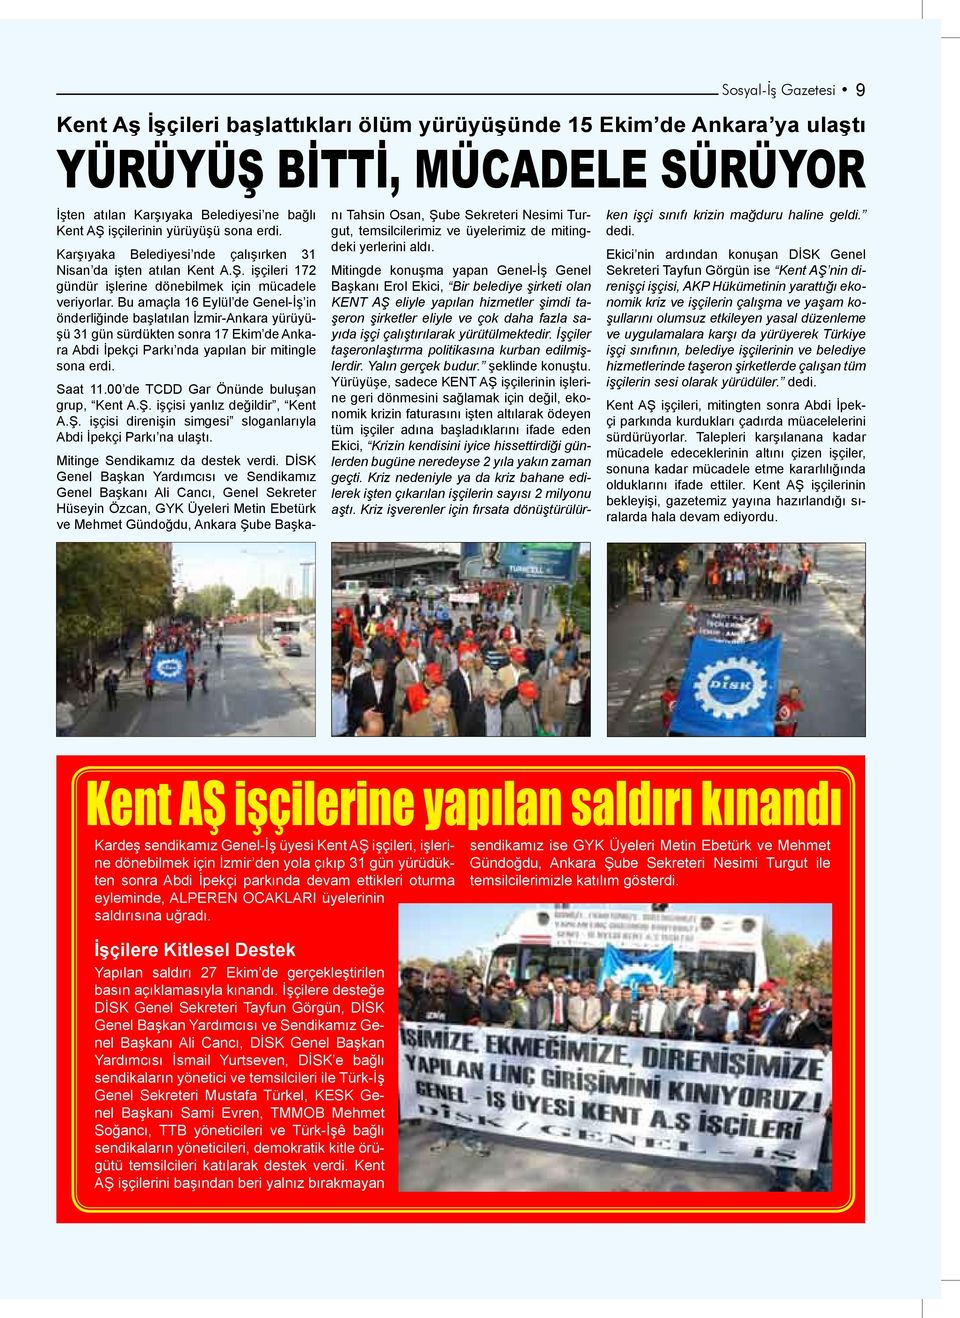 Bu amaçla 16 Eylül de Genel-İş in önderliğinde başlatılan İzmir-Ankara yürüyüşü 31 gün sürdükten sonra 17 Ekim de Ankara Abdi İpekçi Parkı nda yapılan bir mitingle sona erdi. Saat 11.